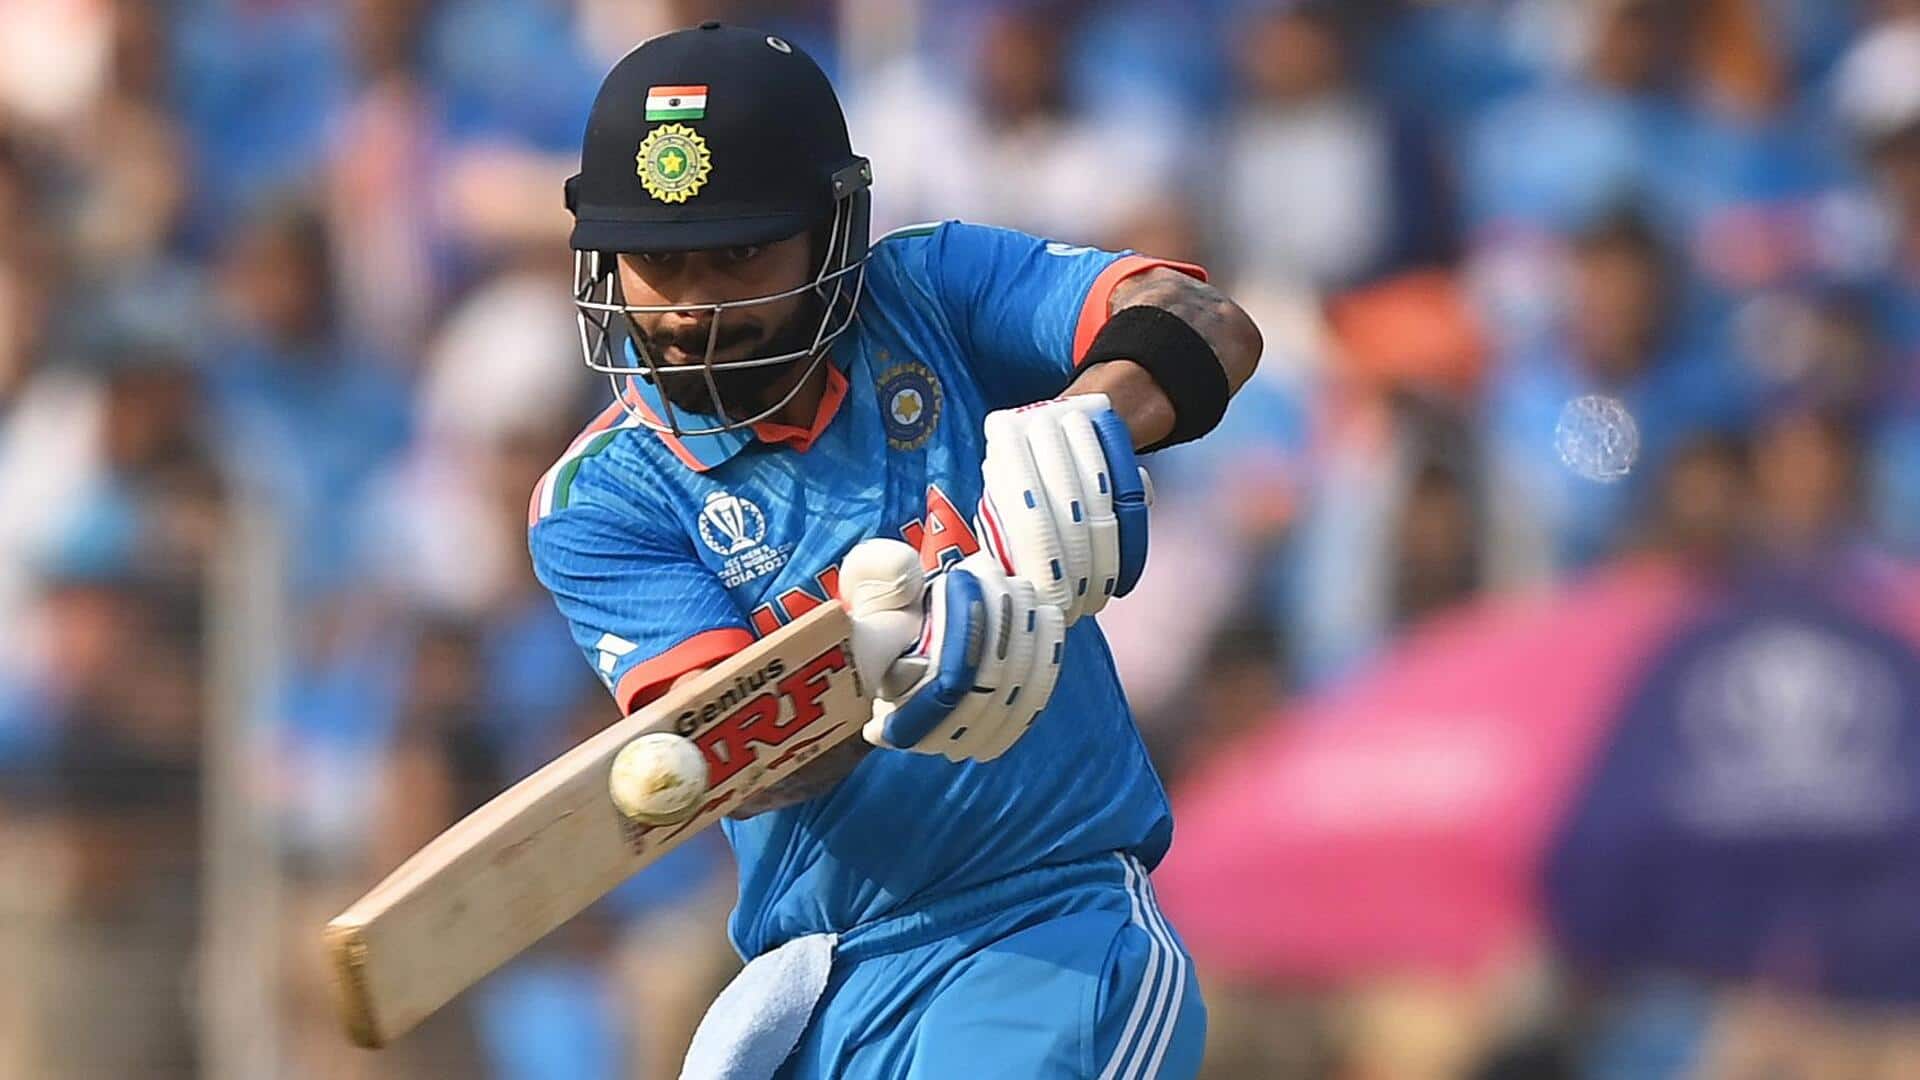 विराट कोहली हारे हुए टी-20 अंतरराष्ट्रीय में सबसे ज्यादा रन बनाने वाले भारतीय बल्लेबाज, जानिए आंकड़े